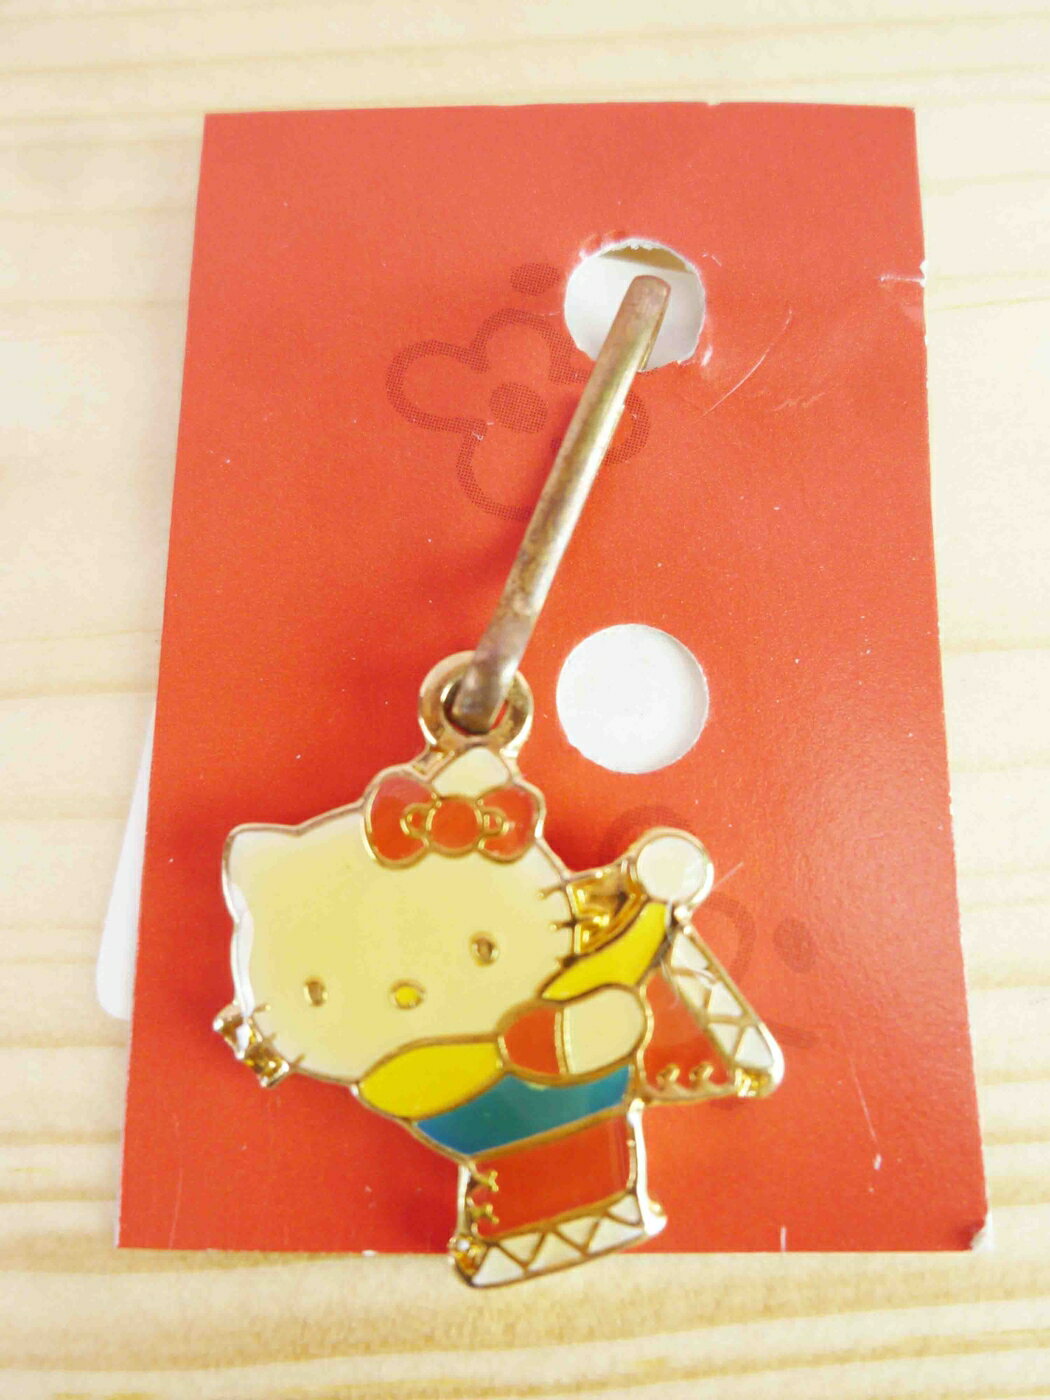 【震撼精品百貨】Hello Kitty 凱蒂貓 KITTY吊飾拉扣-滑雪 震撼日式精品百貨